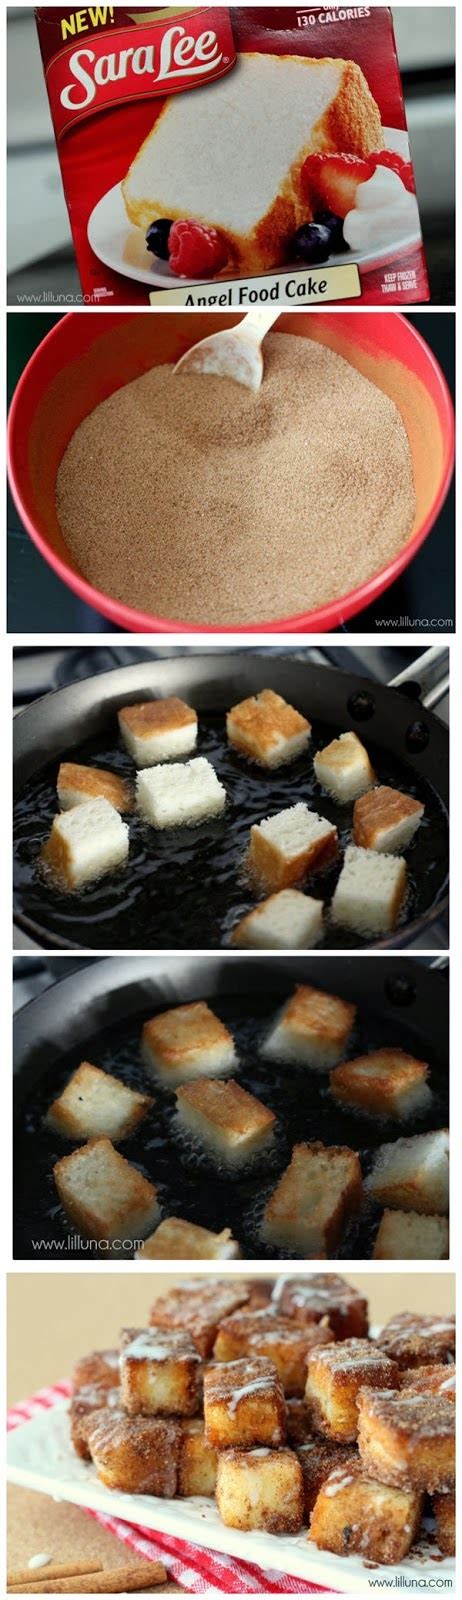 Angel Food Cake Churro Bites Bestfoodrecipes